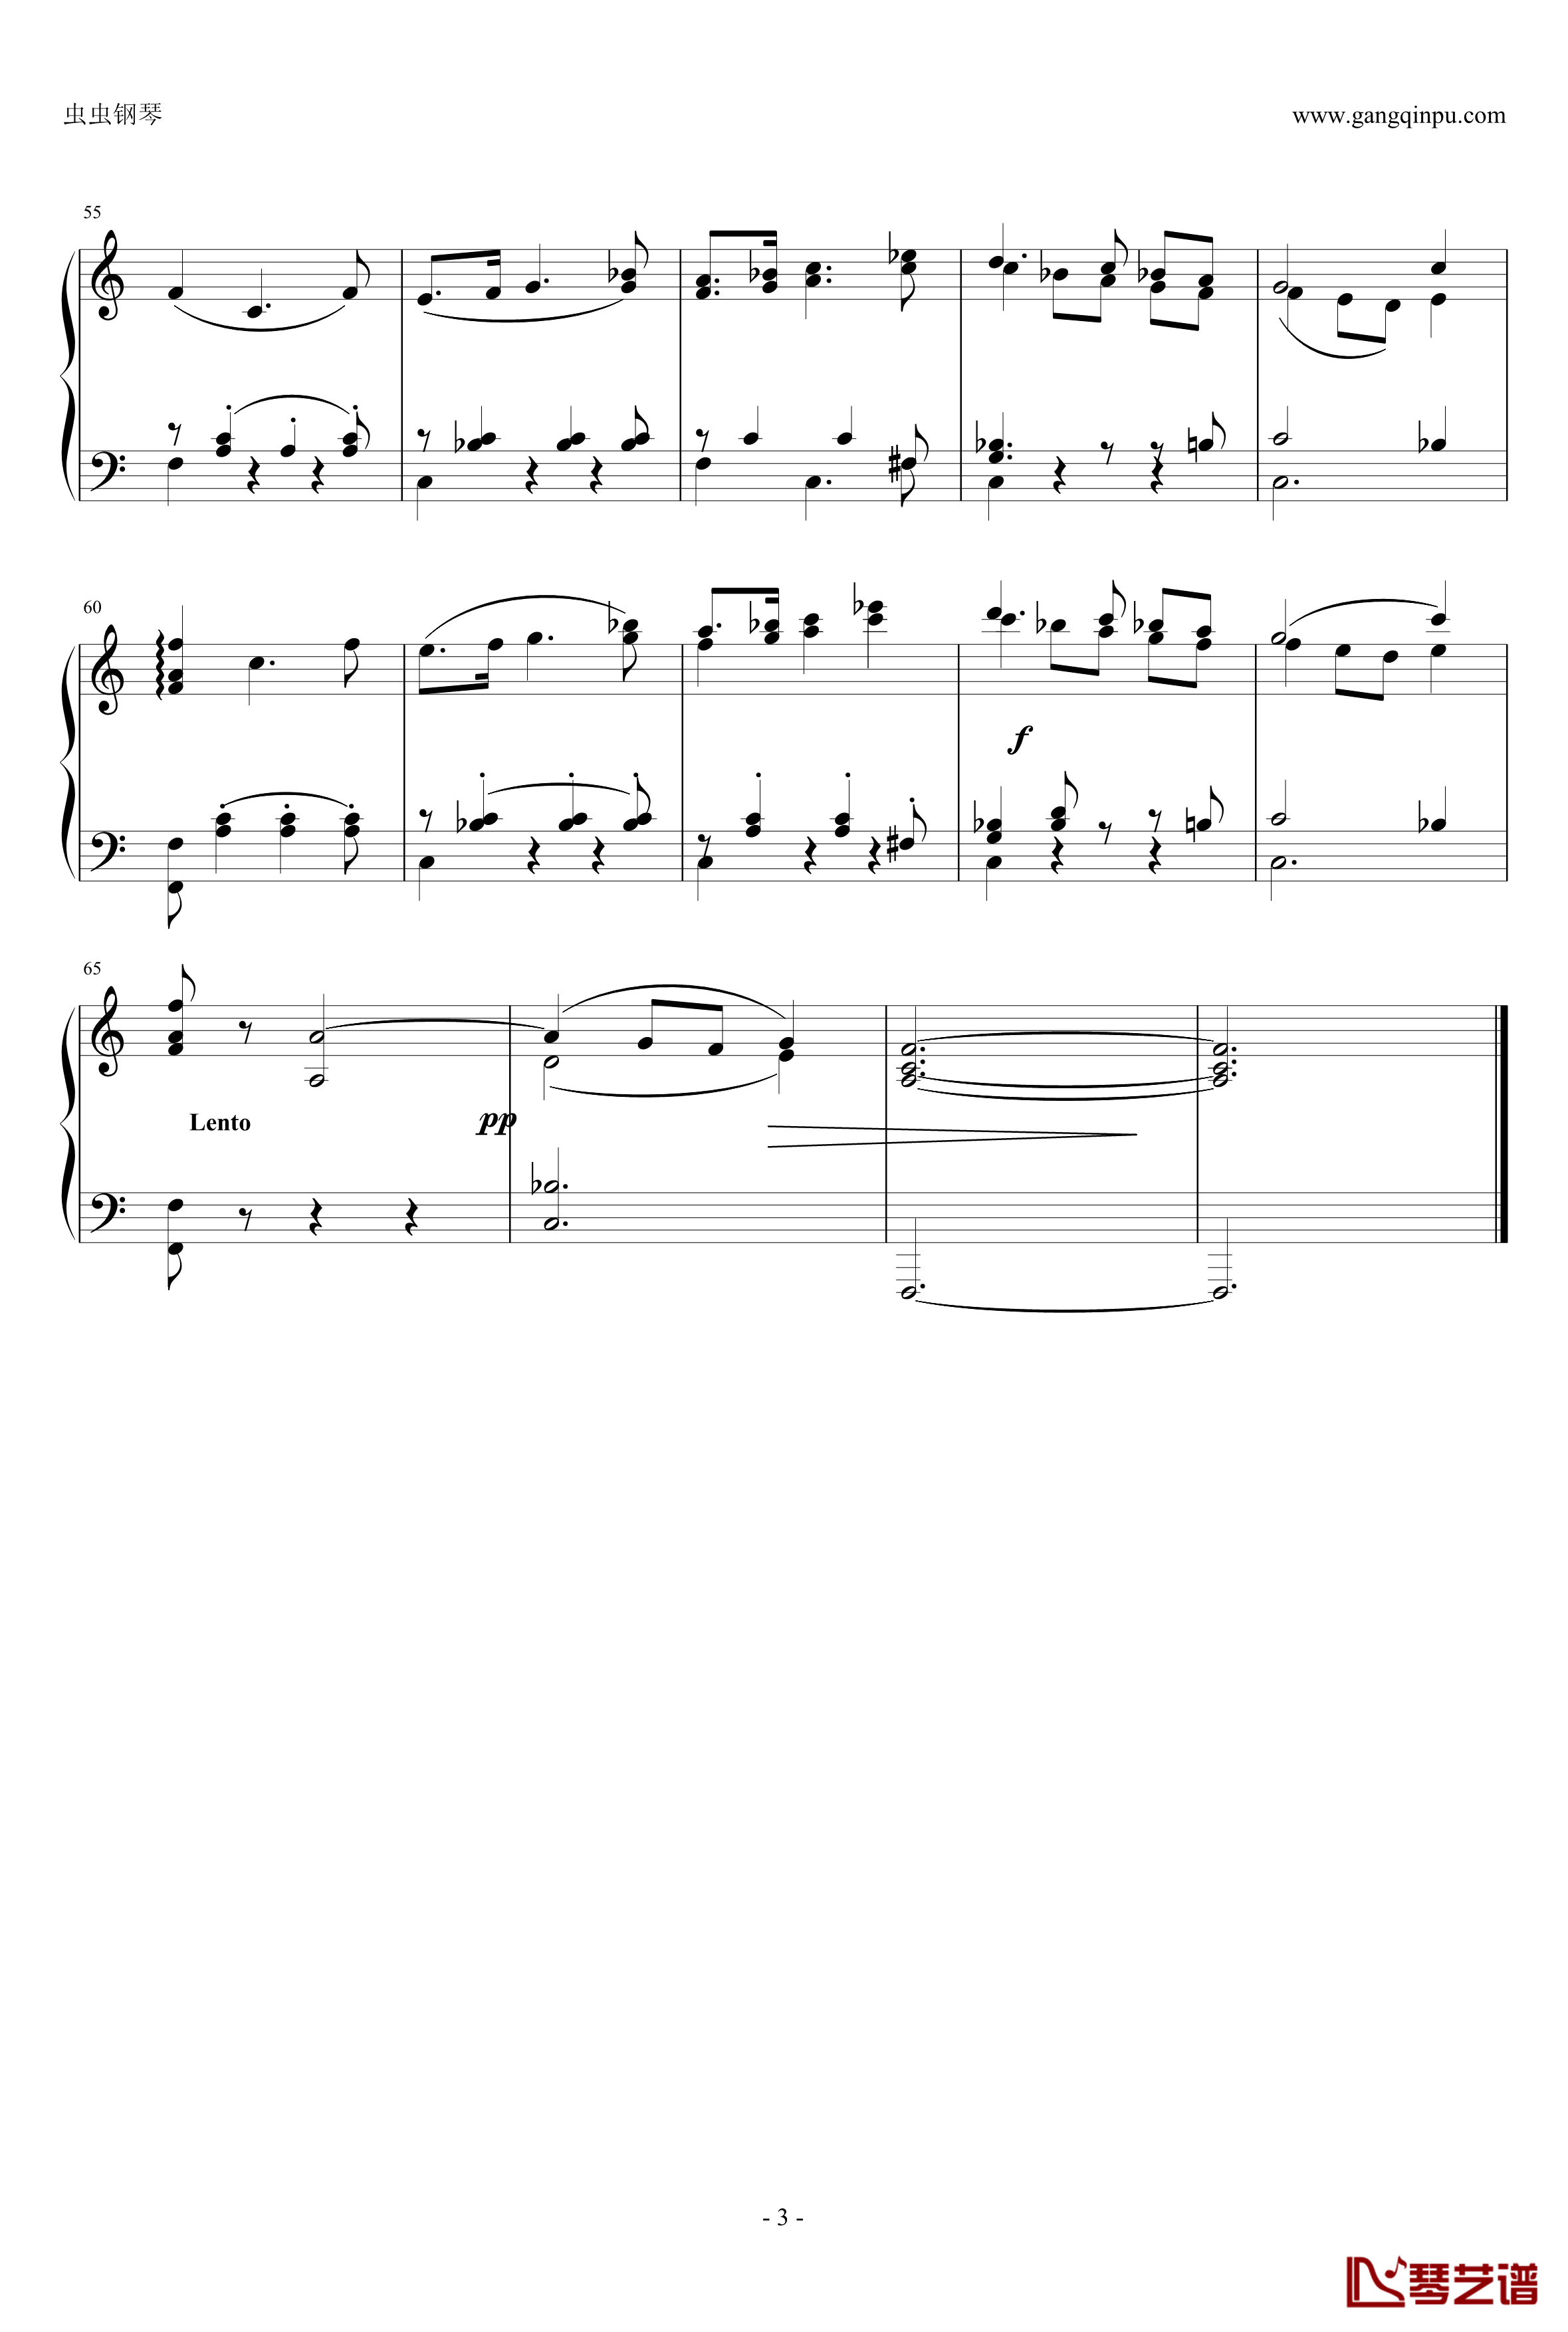 未完成交响曲钢琴谱-舒伯特-第一乐章选段